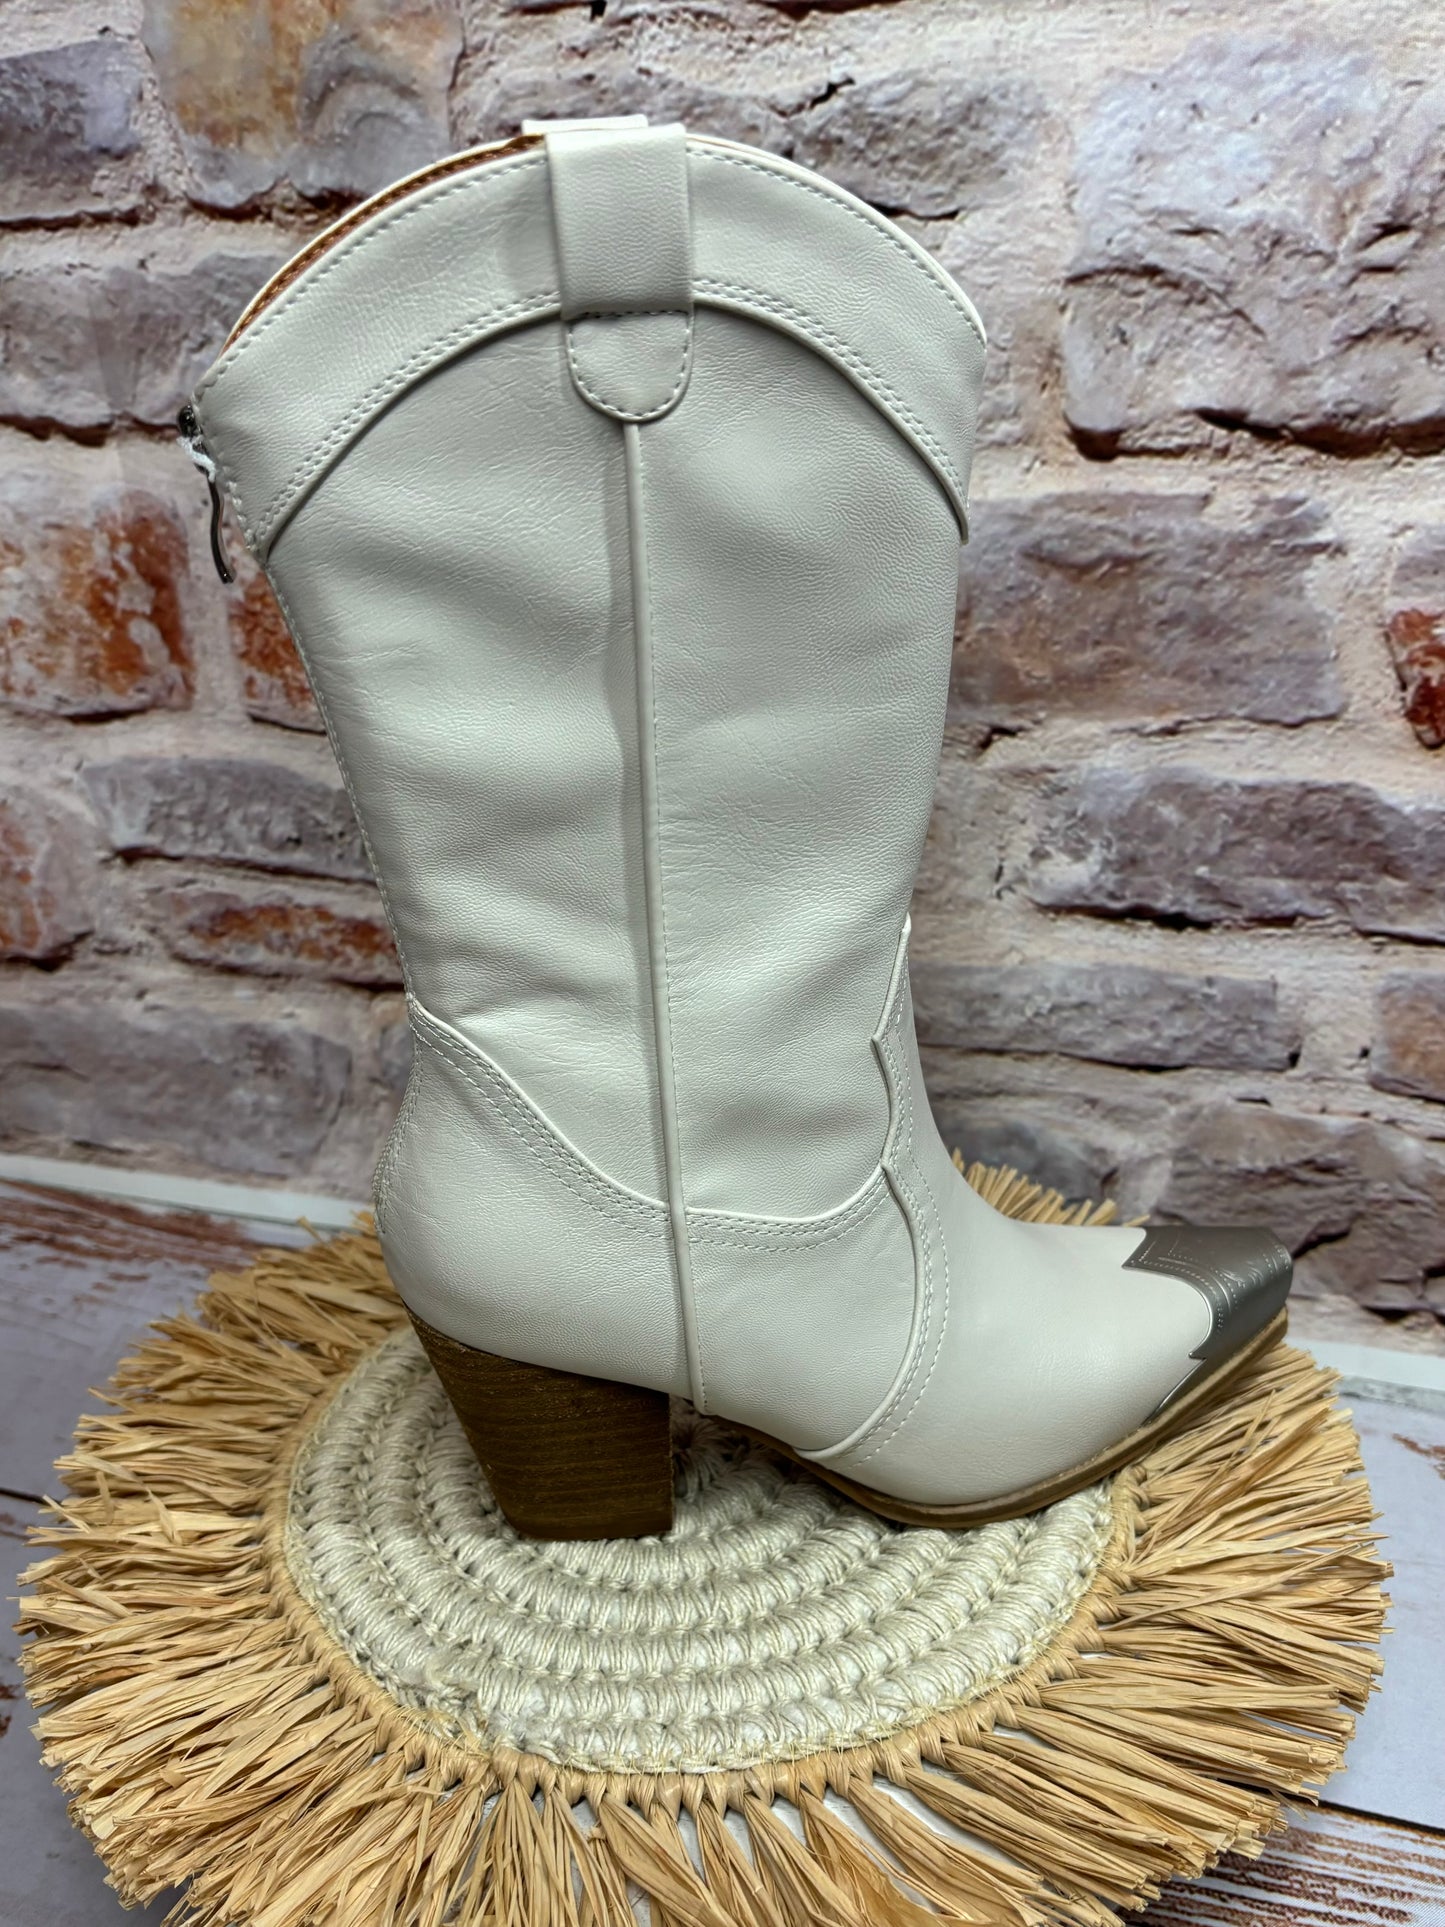 Dakota cowboy boots